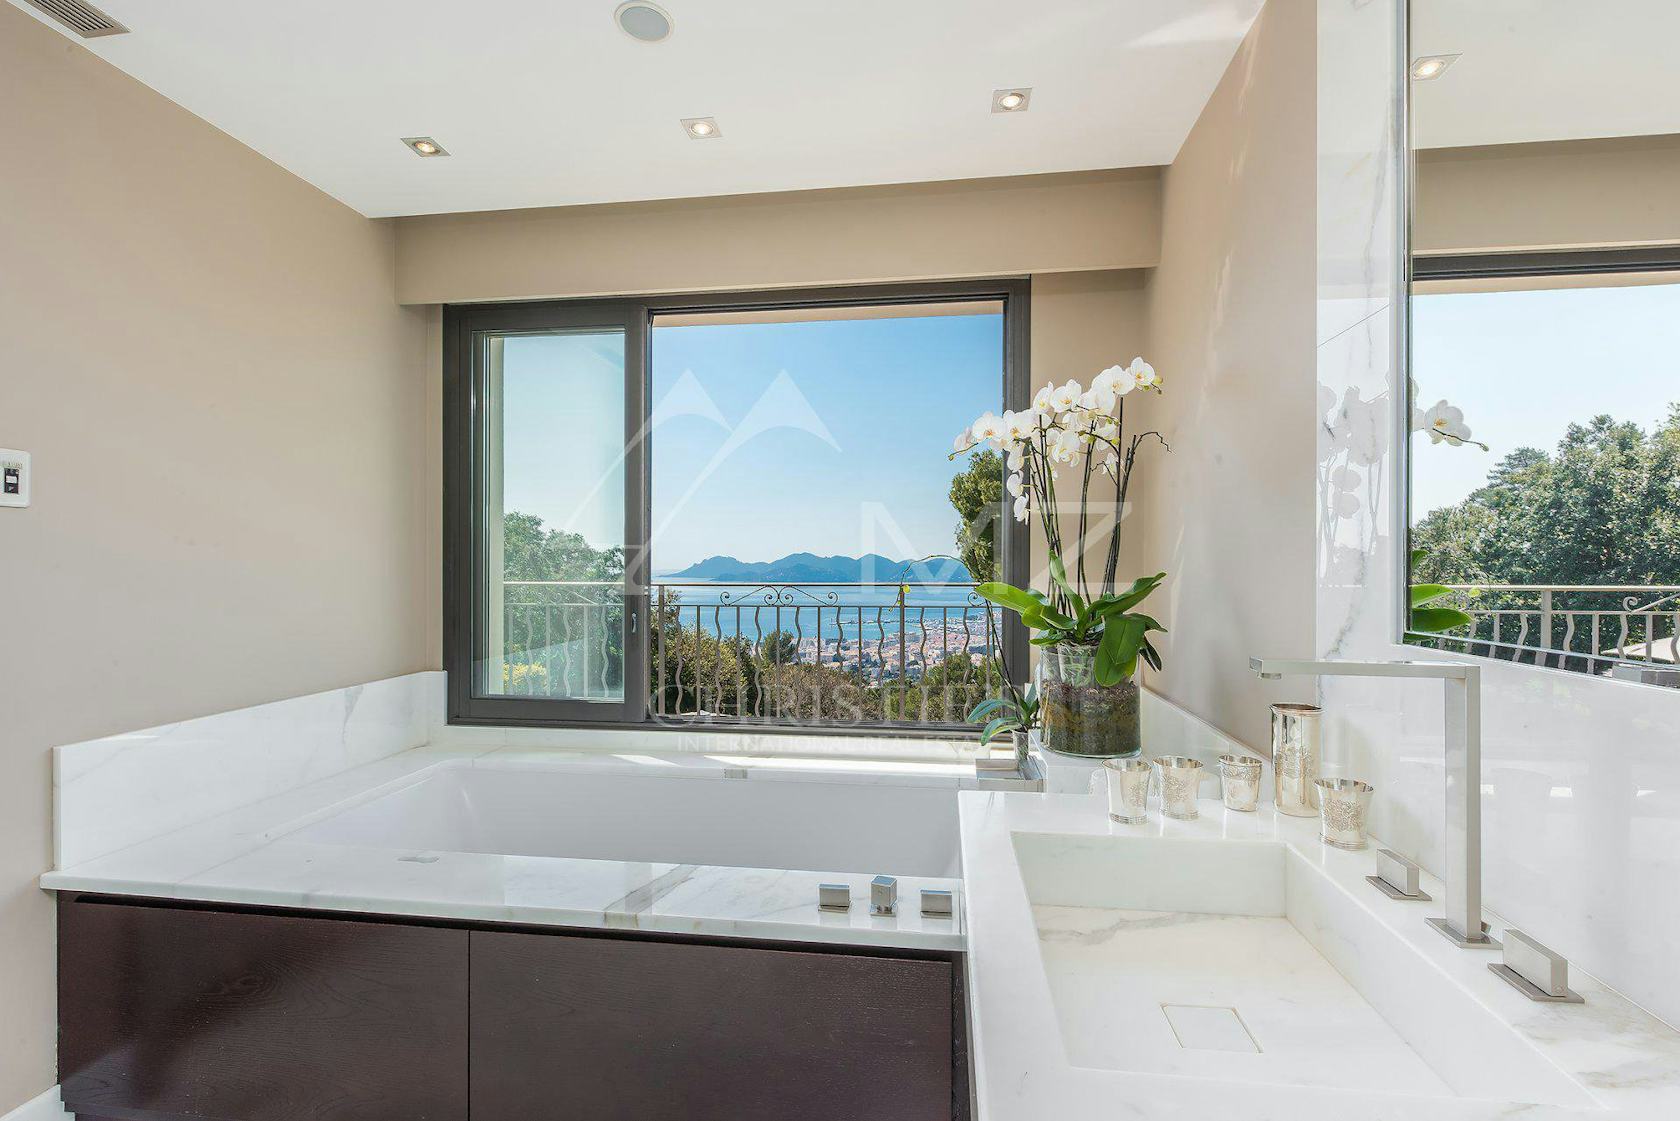 tub interior design indoors bathtub